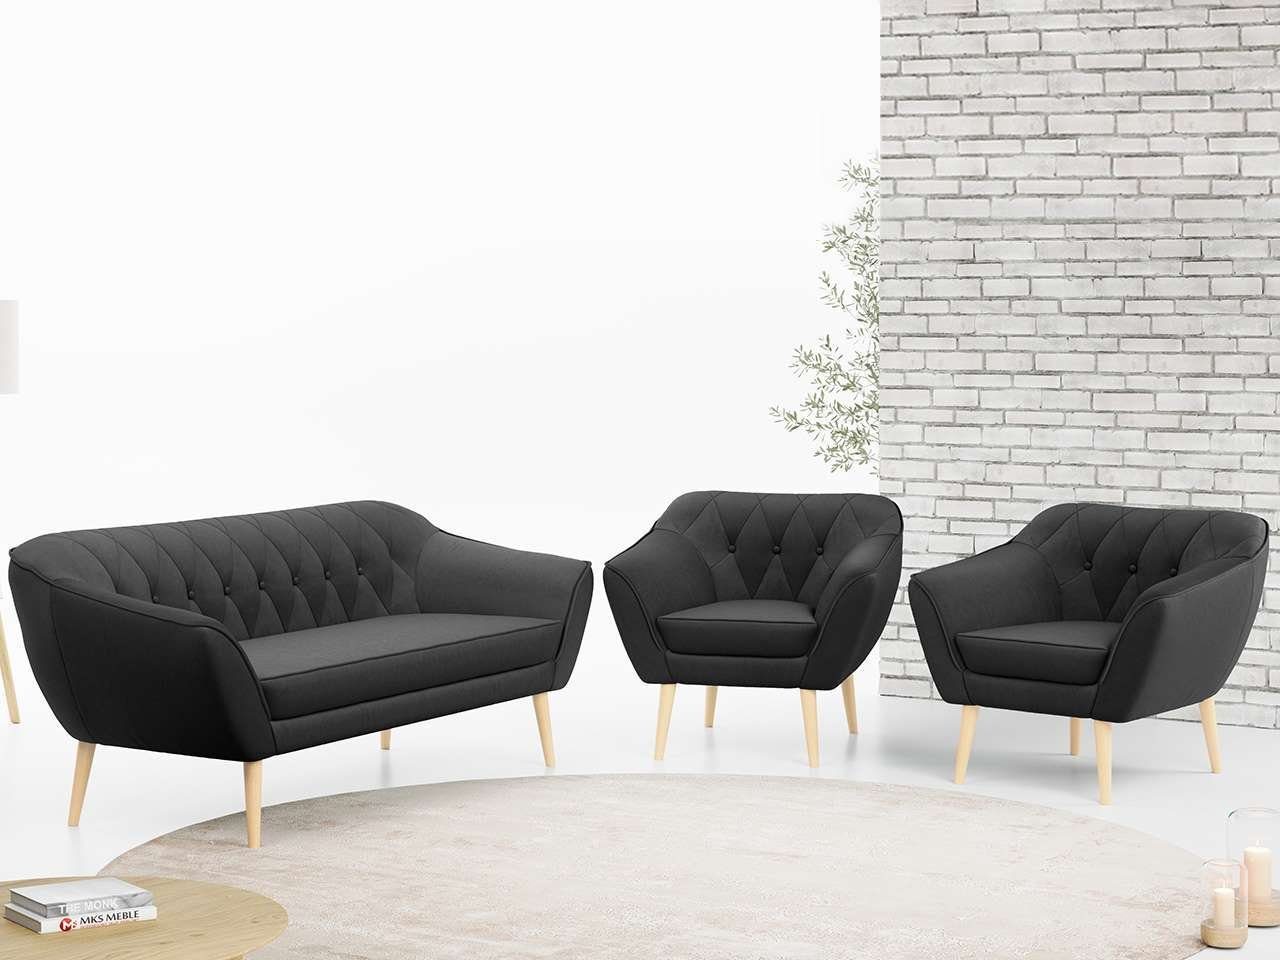 MKS MÖBEL Sofa PIRS 3 1 1, mit Relaxfunktion, Moderne Sofa Set, Skandinavische Deko Dunkelgrau Casablanca